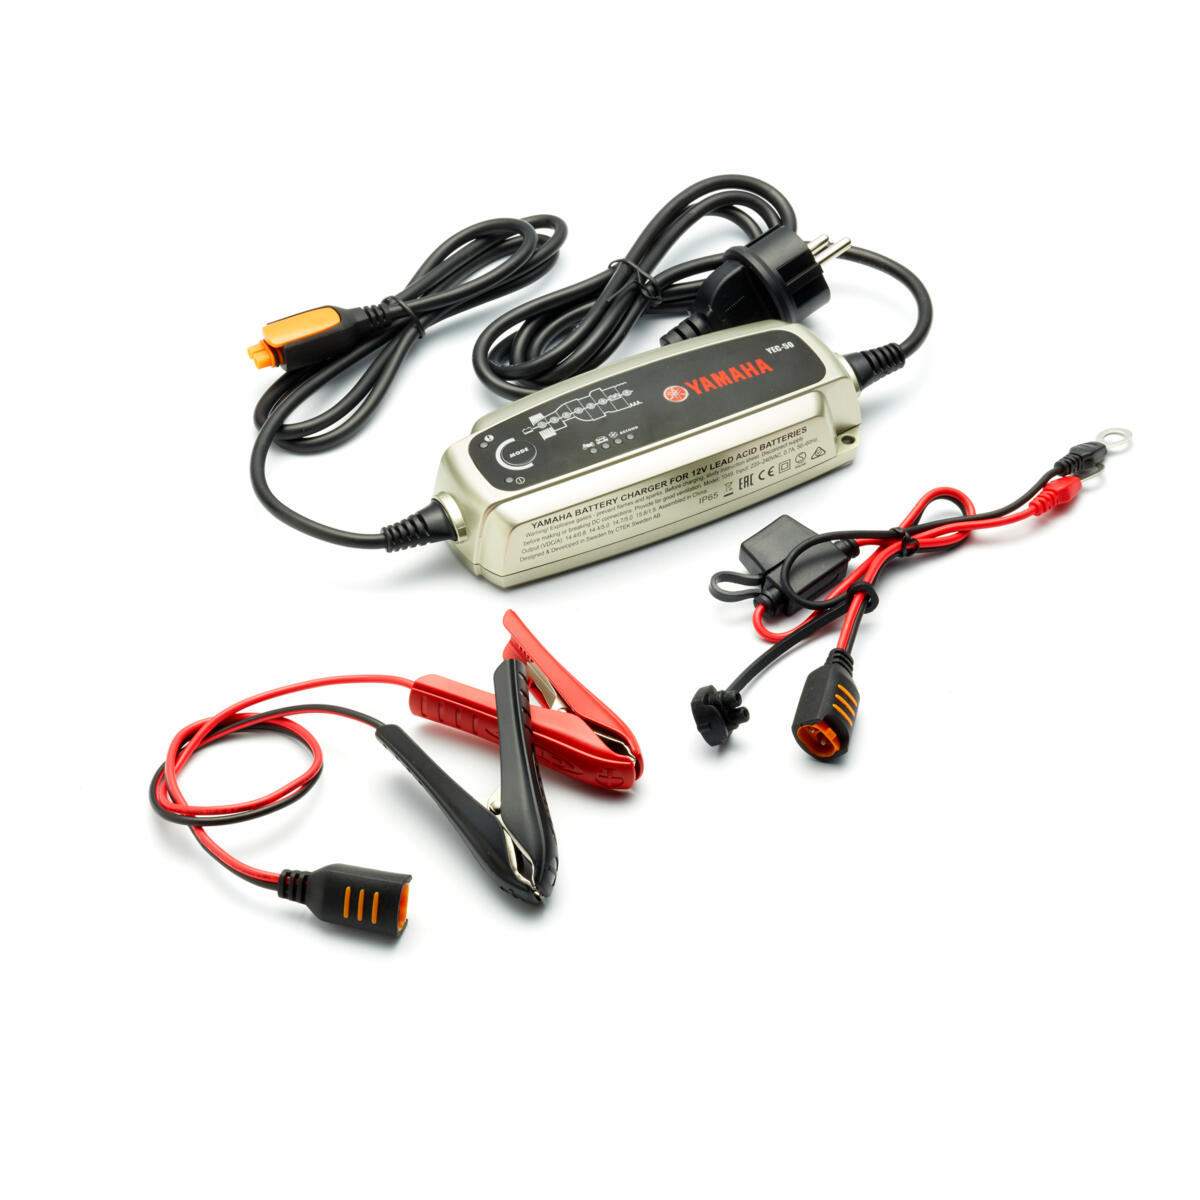 Caricabatterie a 8 fasi in grado di caricare la batteria di motociclette, scooter, ATV, SMB e/o prodotti marini Yamaha.